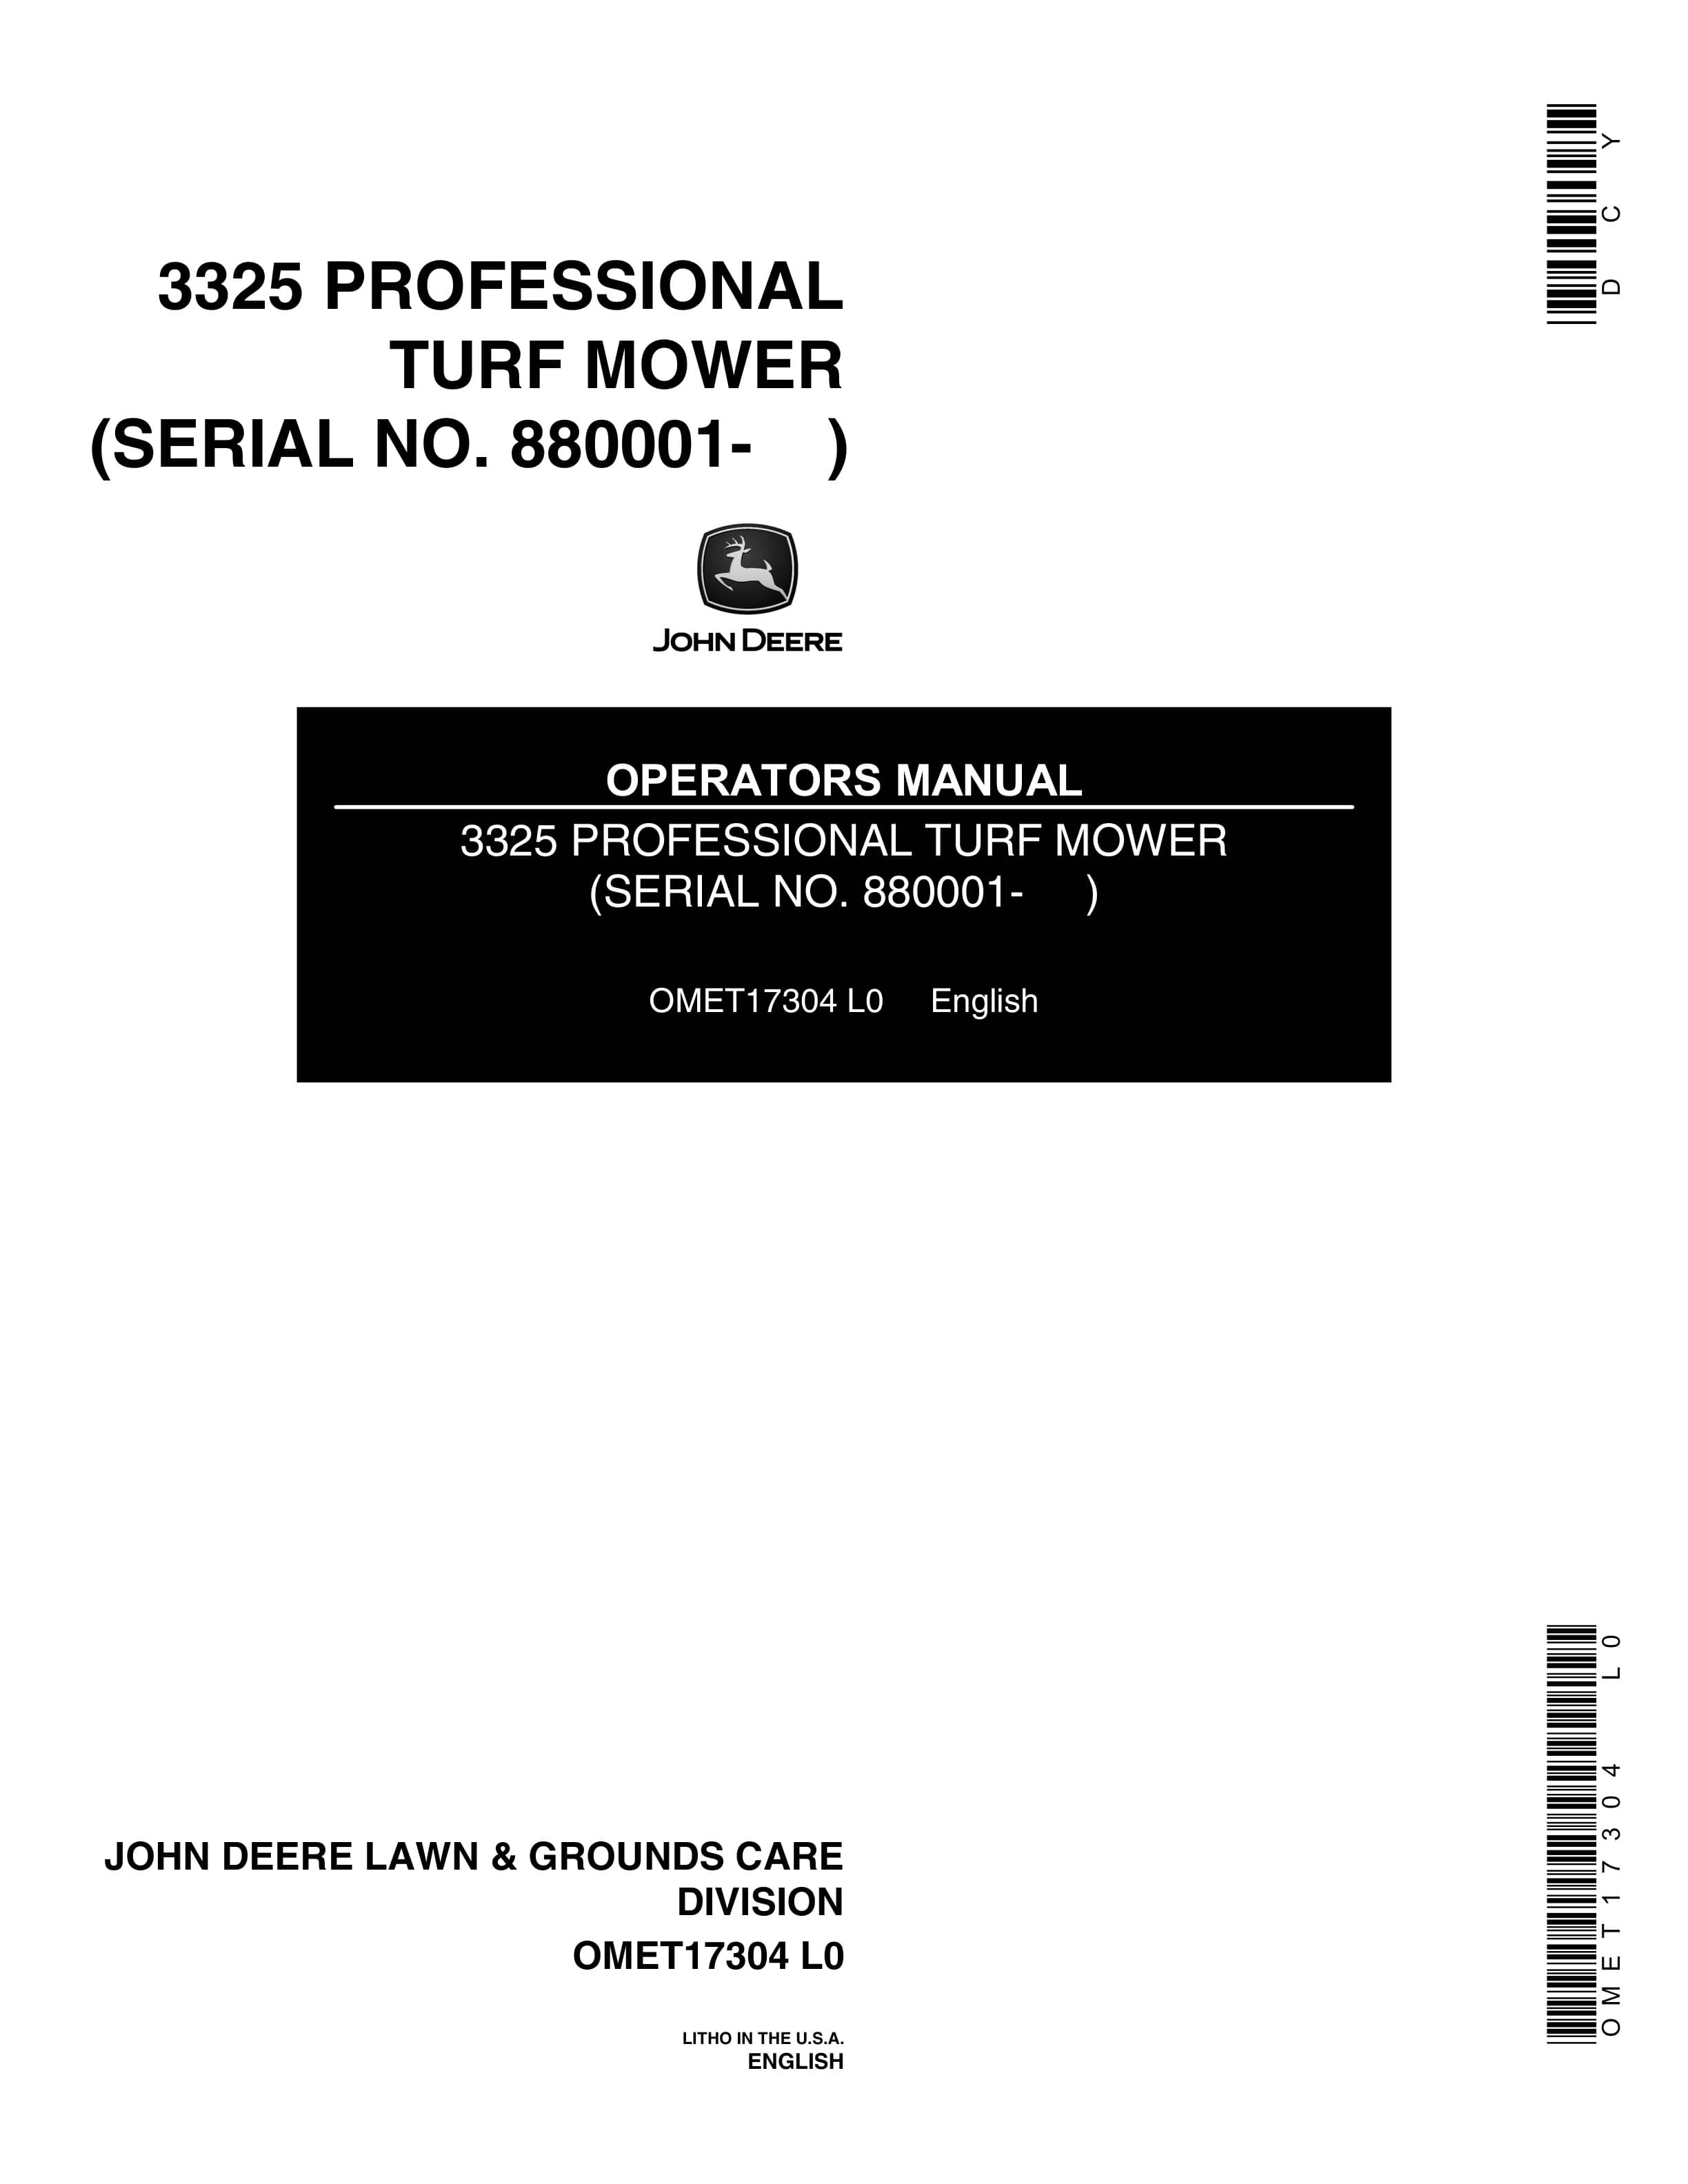 John Deere 3325 PROFESSIONAL TURF MOWER Operator Manual OMET17304 1